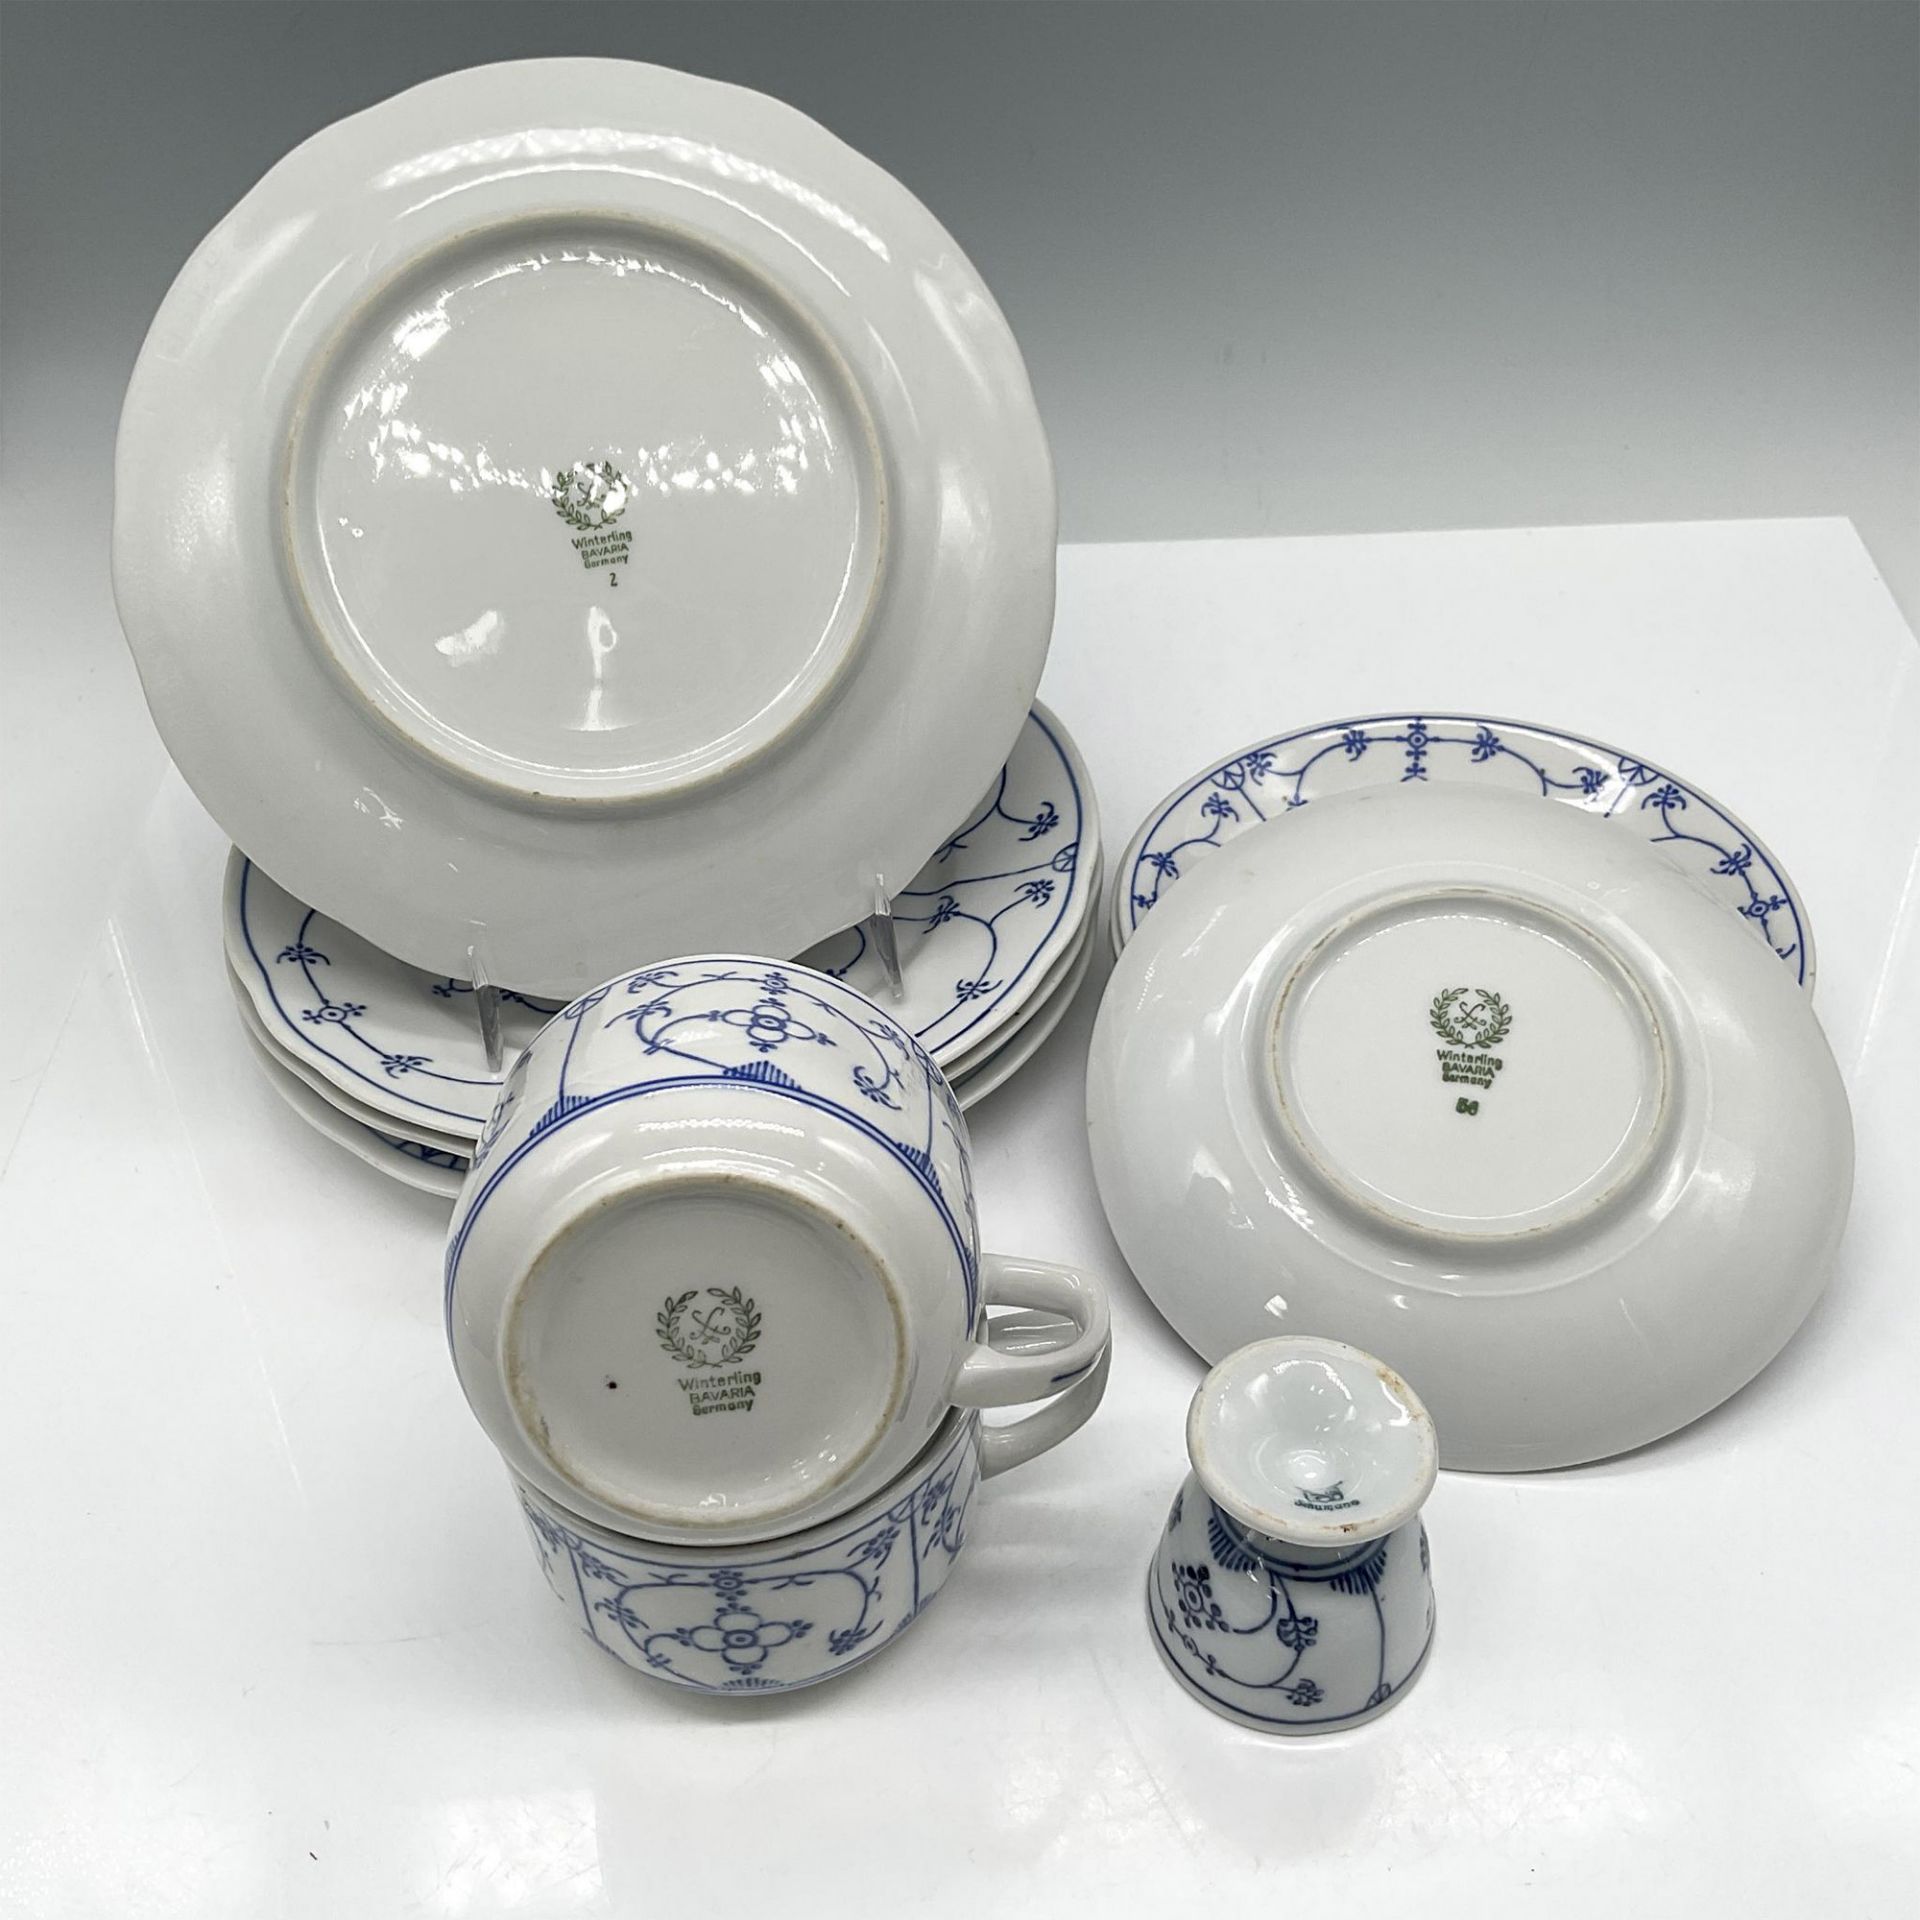 11pc Winterling Bavaria Porcelain Dessert Set, Indisch Blau - Image 2 of 2